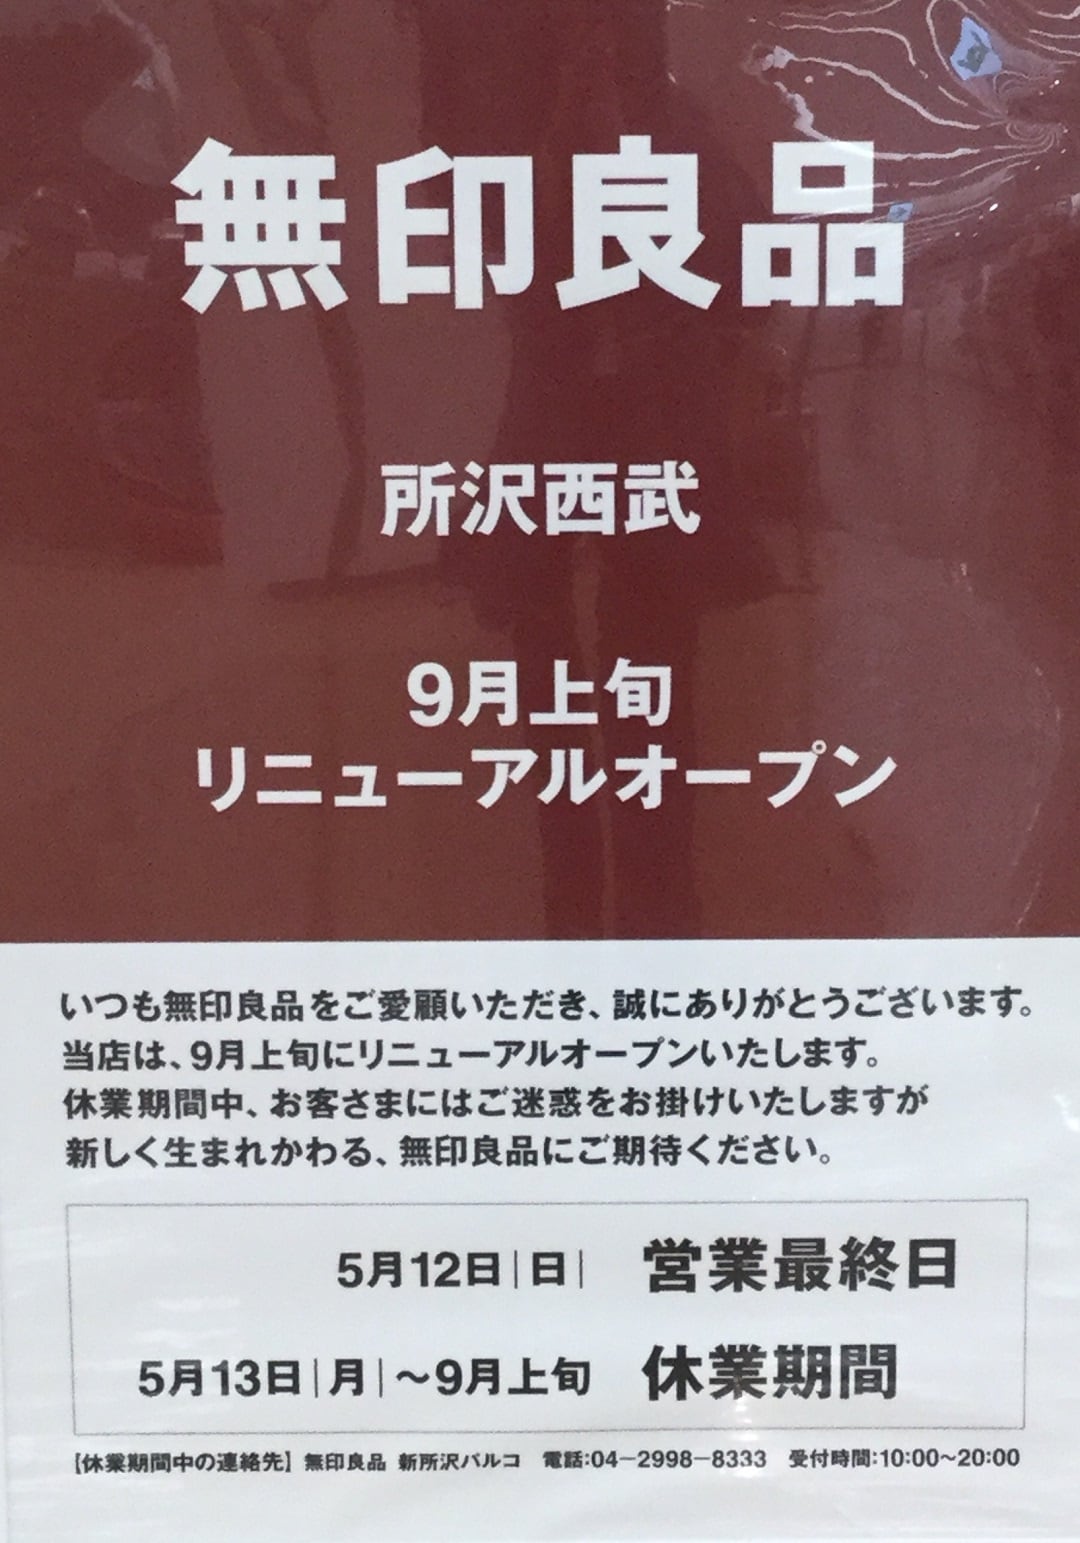 所沢西武 リニューアルオープンによる一時休業のお知らせ 無印良品